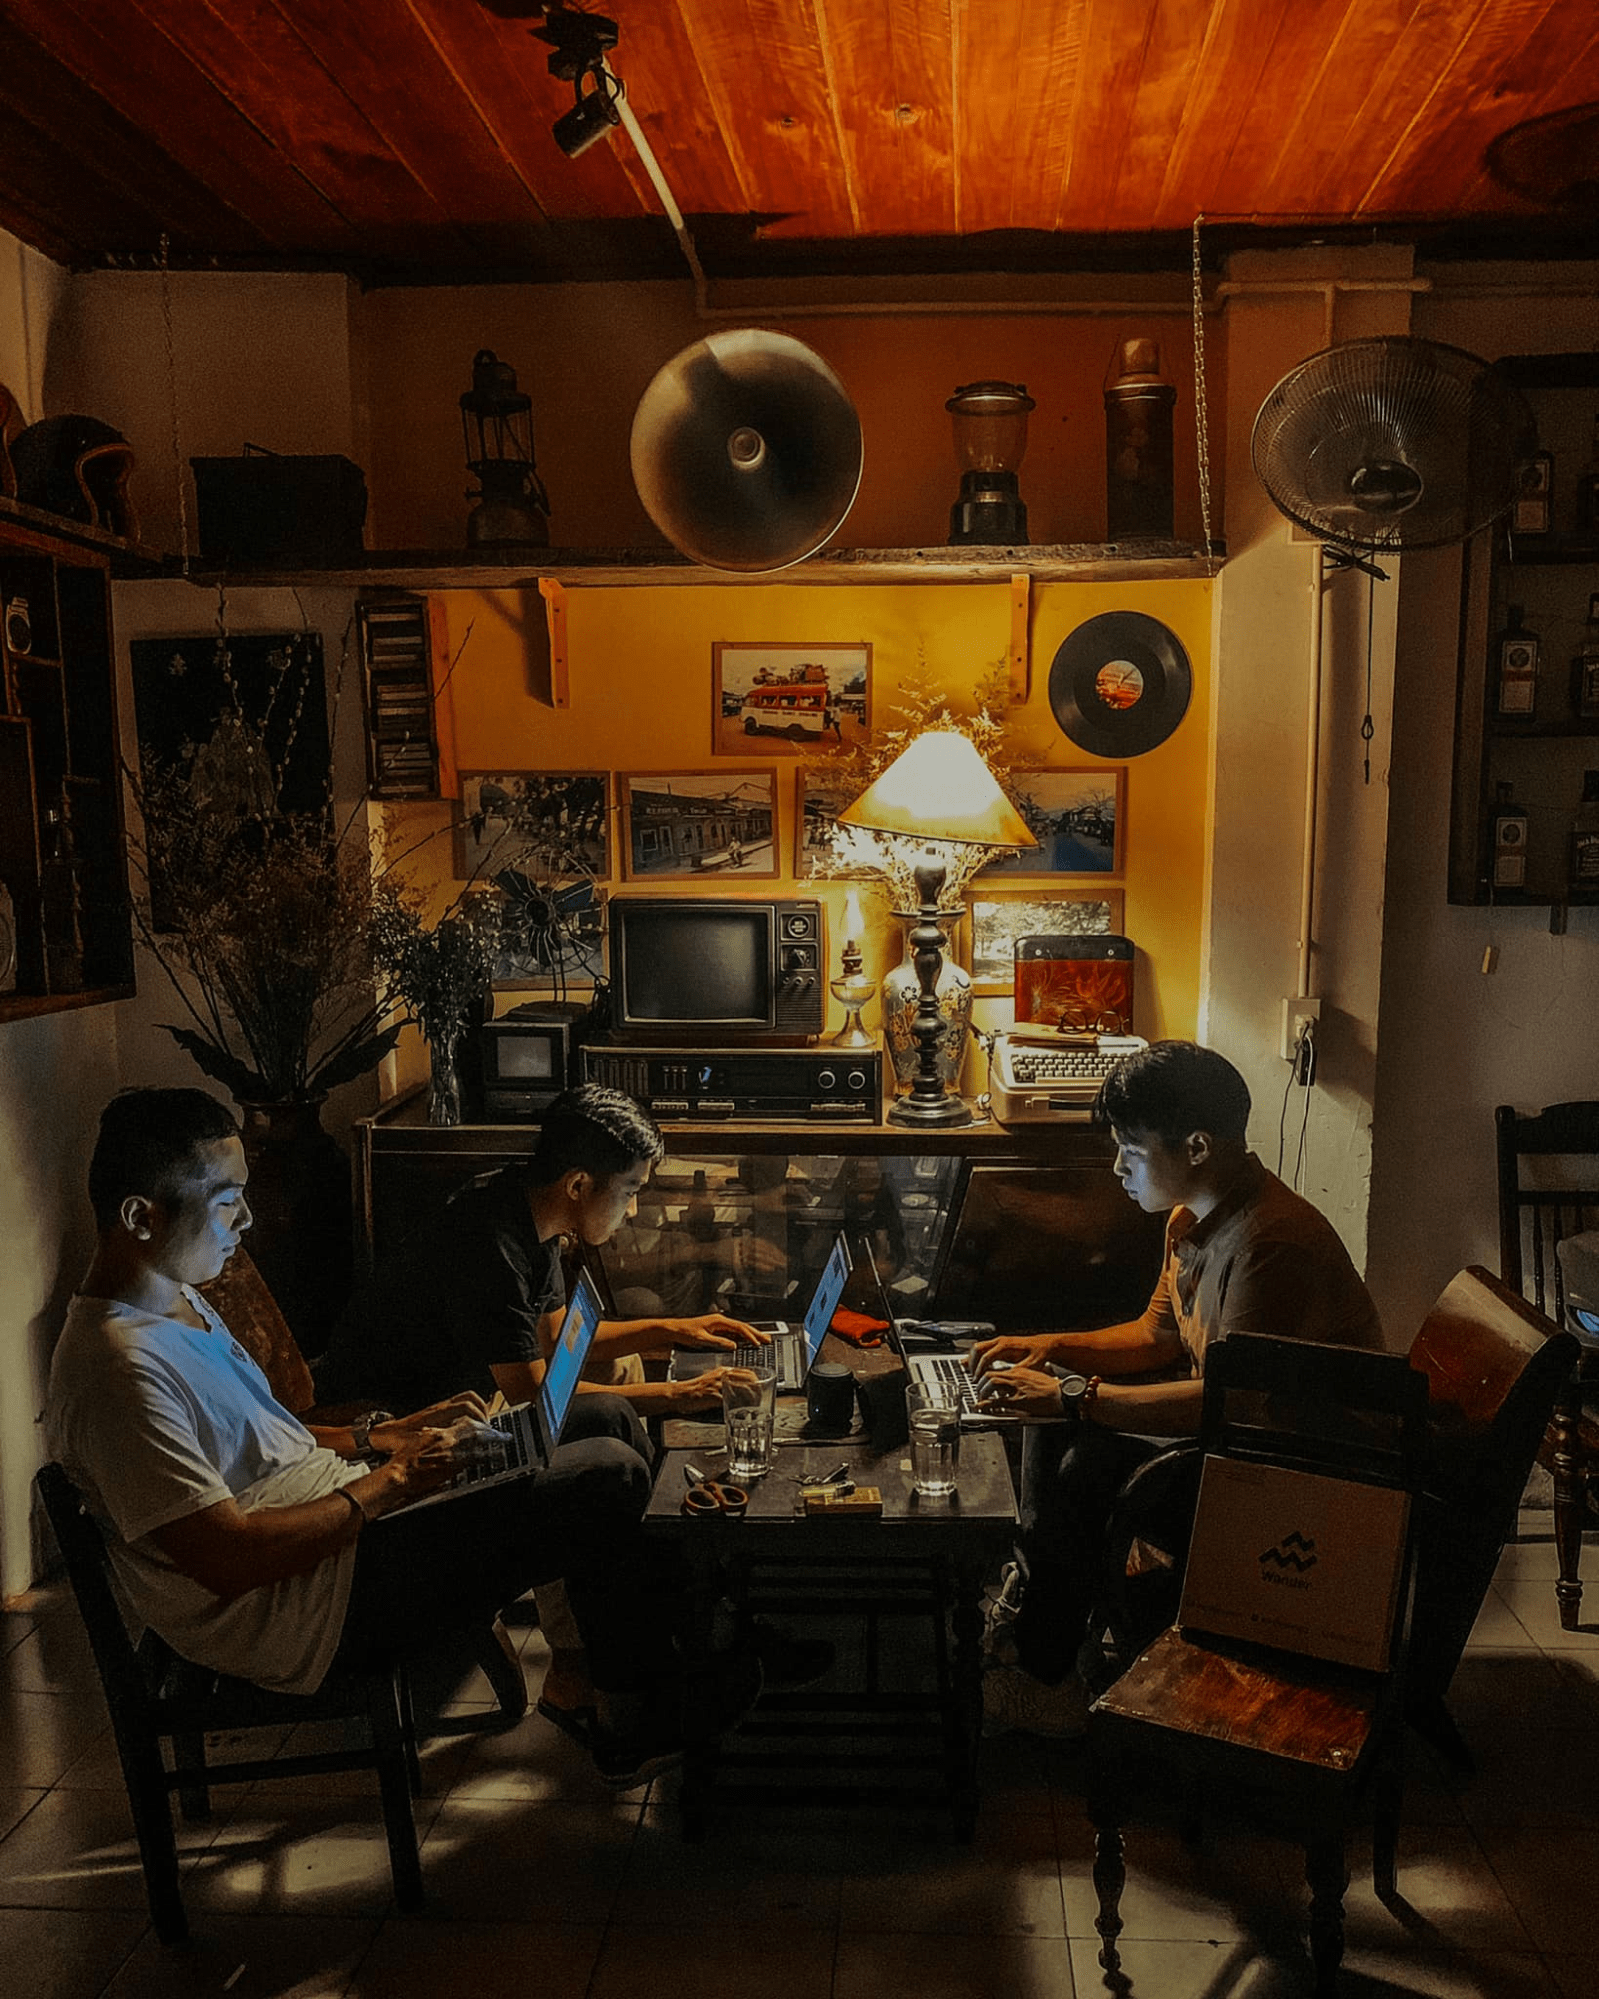 Quán cafe mở xuyên đêm ở Đà Nẵng 4